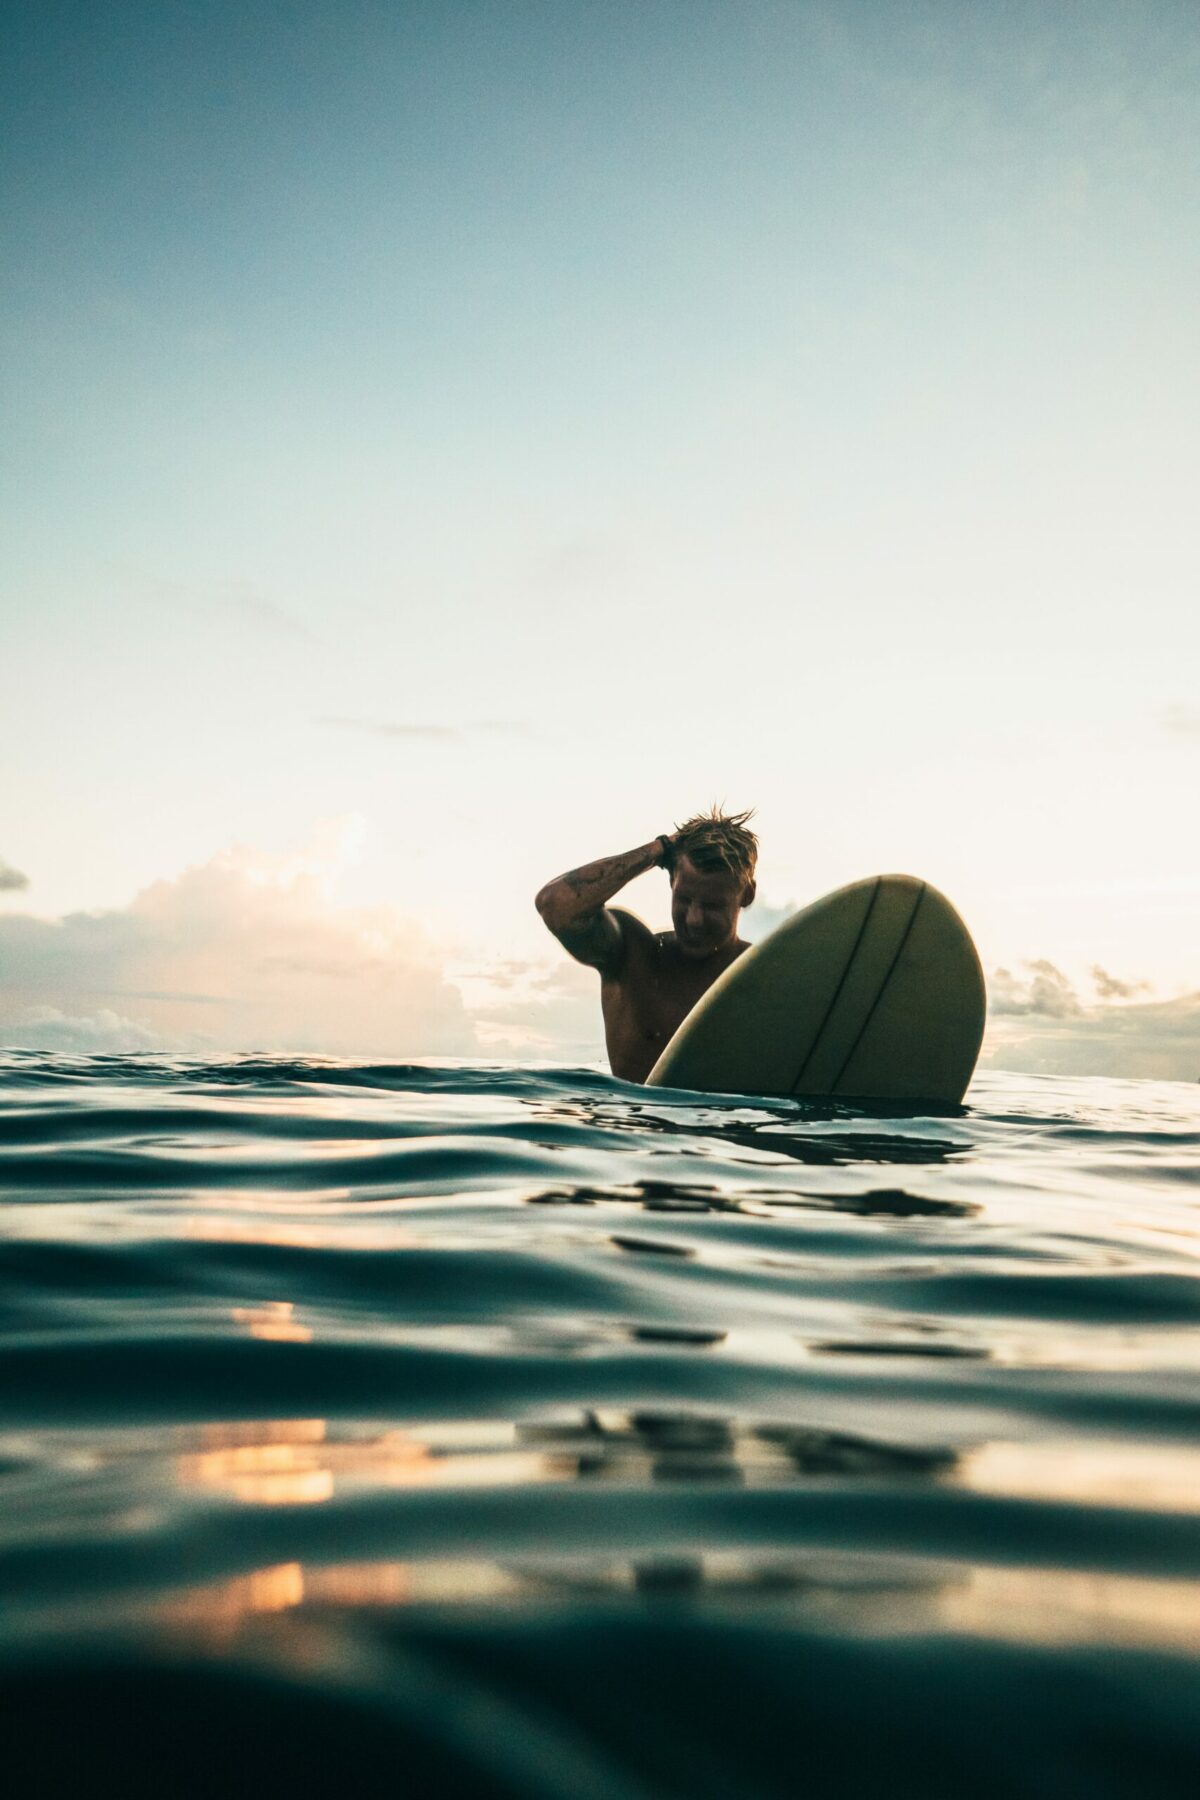 Man on surfboard in water.